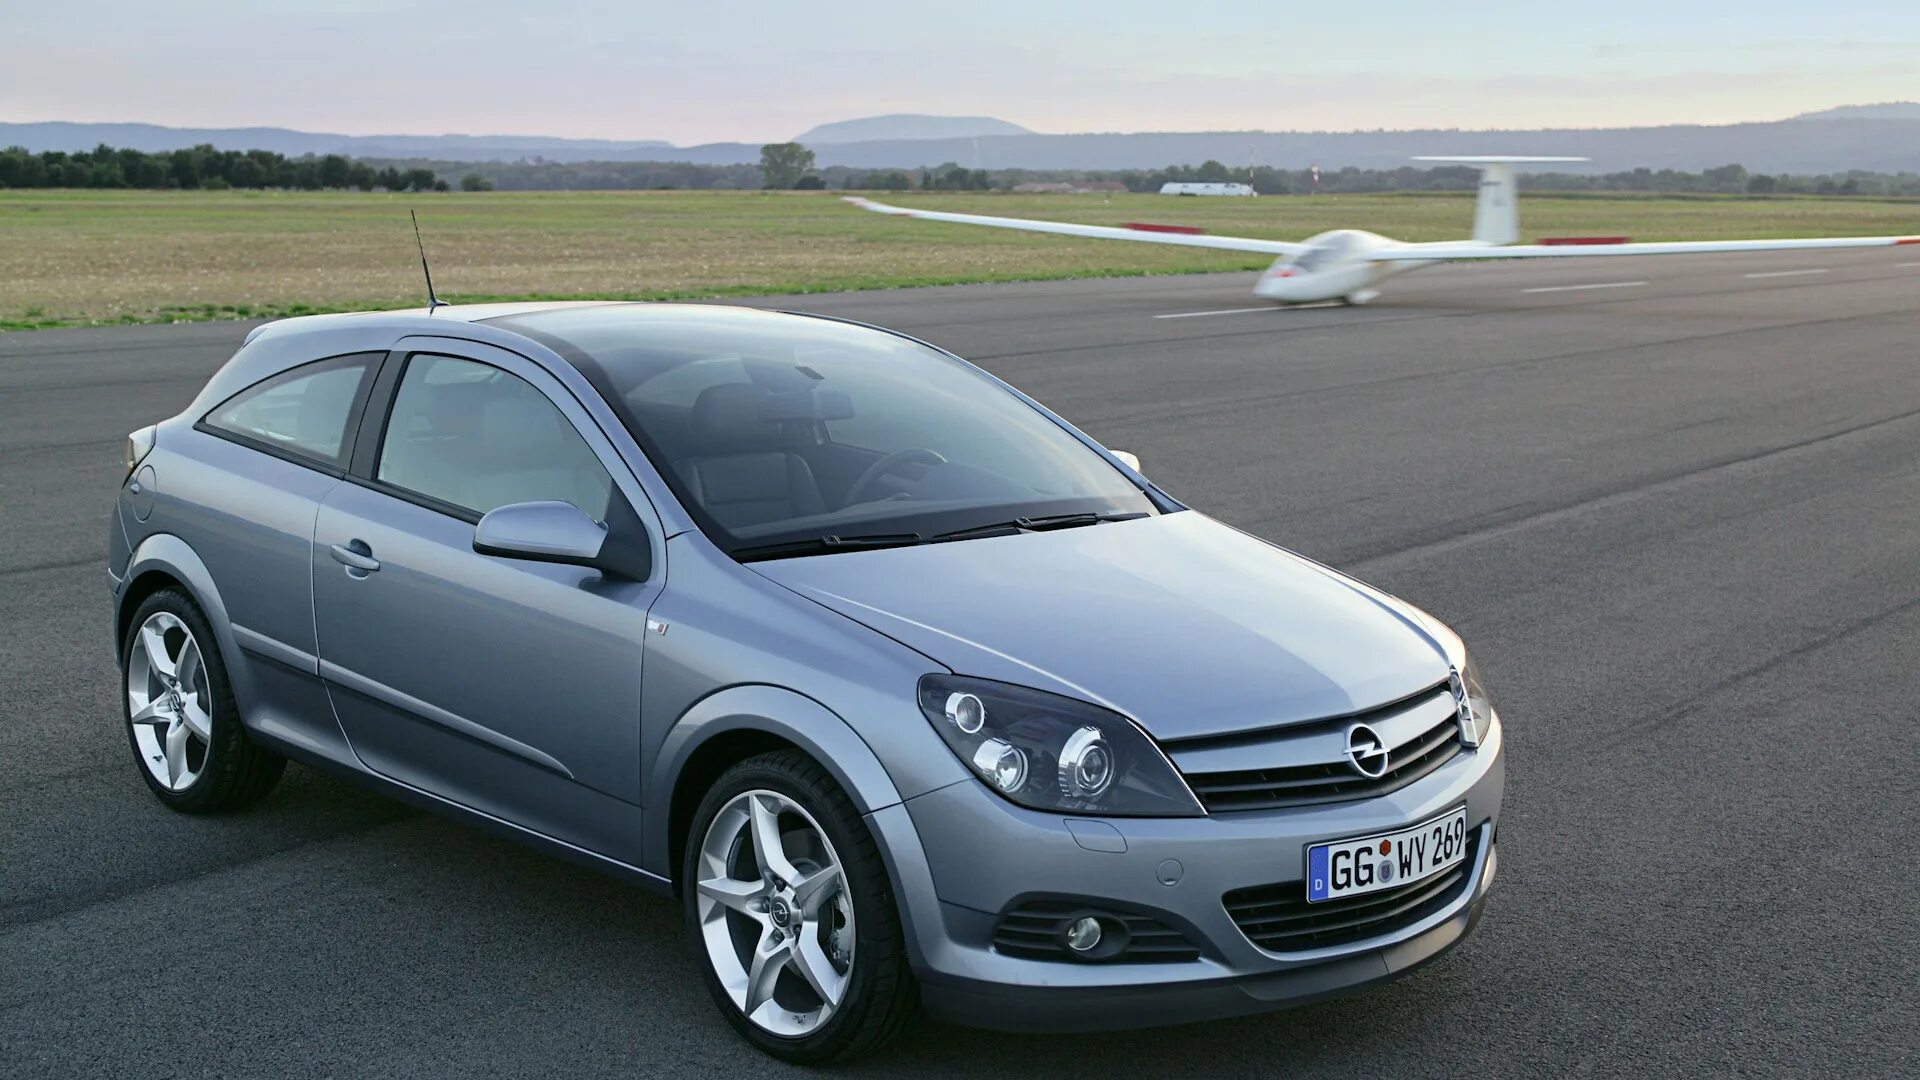 Opel Astra h GTC. Opel Astra h GTC 1.8. Opel Astra h GTC 1.6. Opel Astra h GTC 2008.